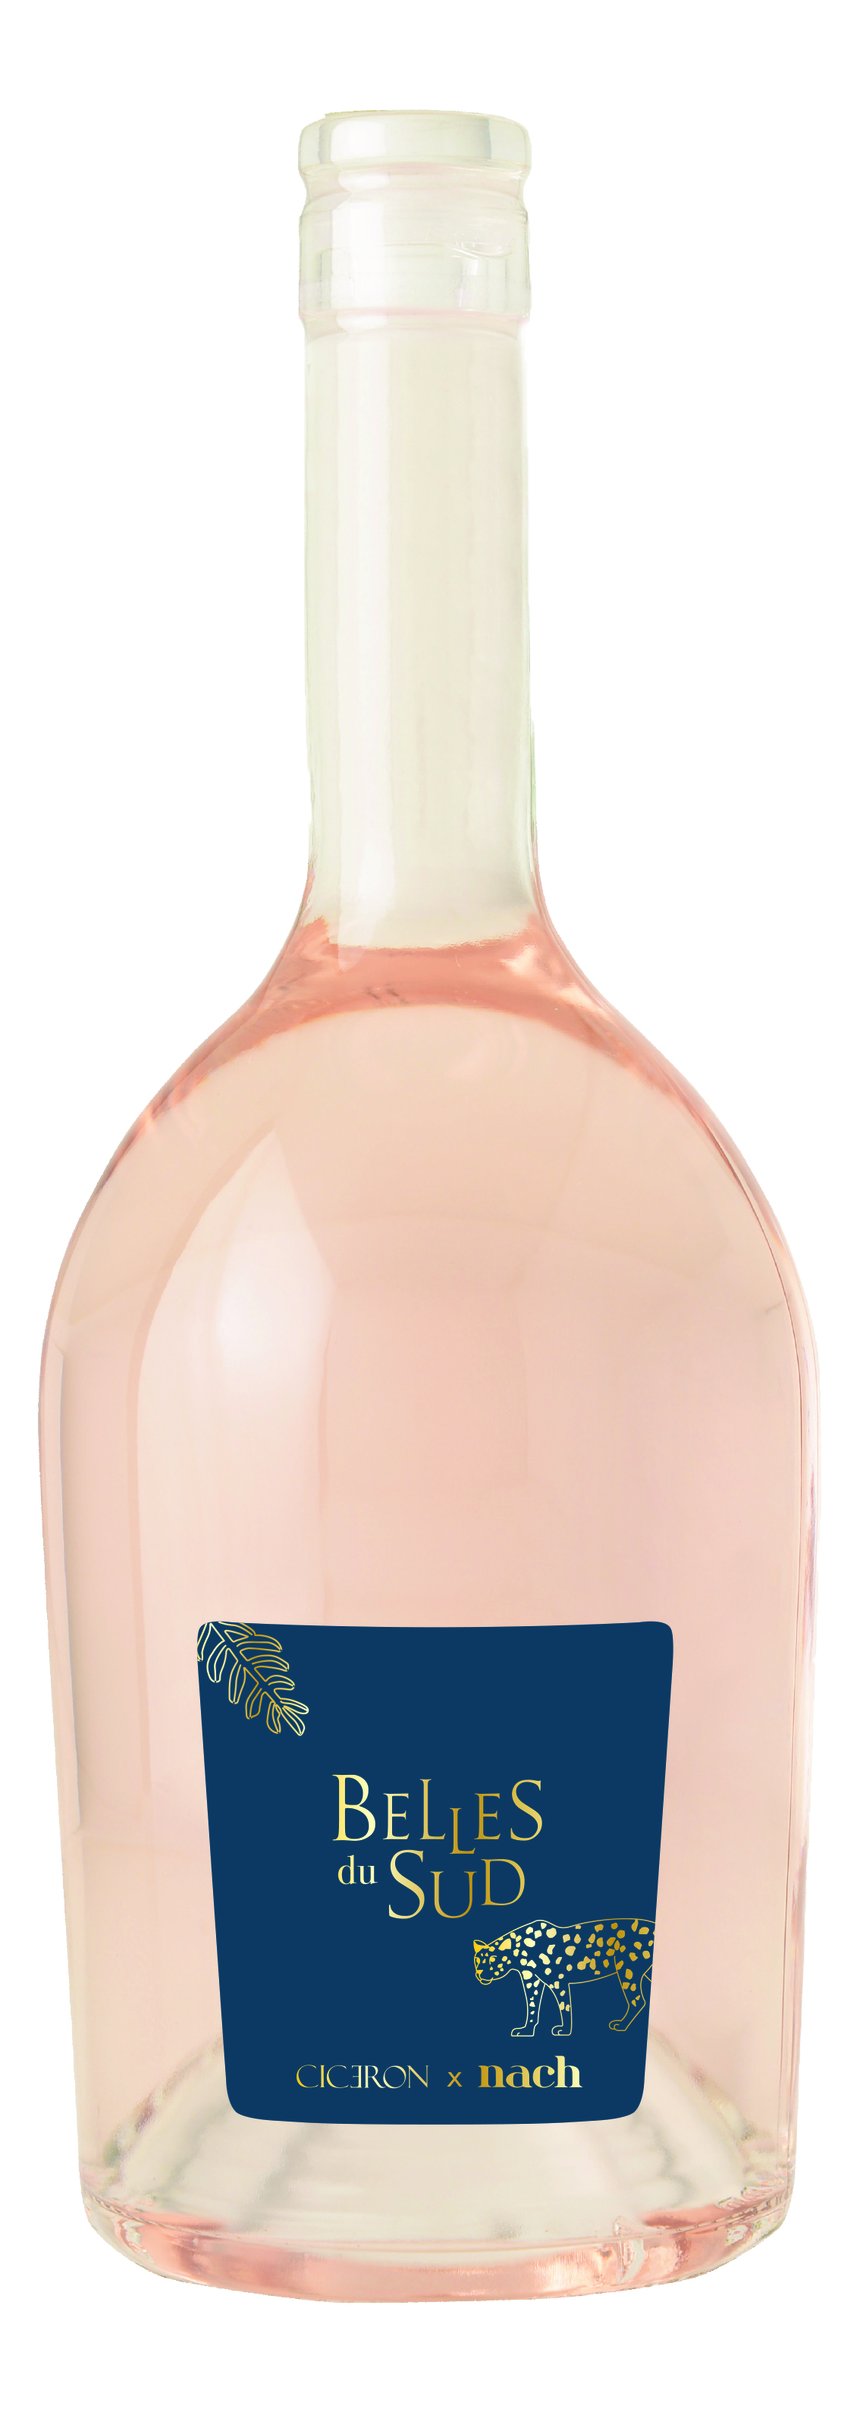 Pour réaliser « Belles du Sud », un rosé à 10 degrés d’alcool, les domaines Auriol ont opté pour un cinsault récolté avant d’atteindre la maturité technologique des raisins. Le prix consommateur conseillé est de 8,90 euros.